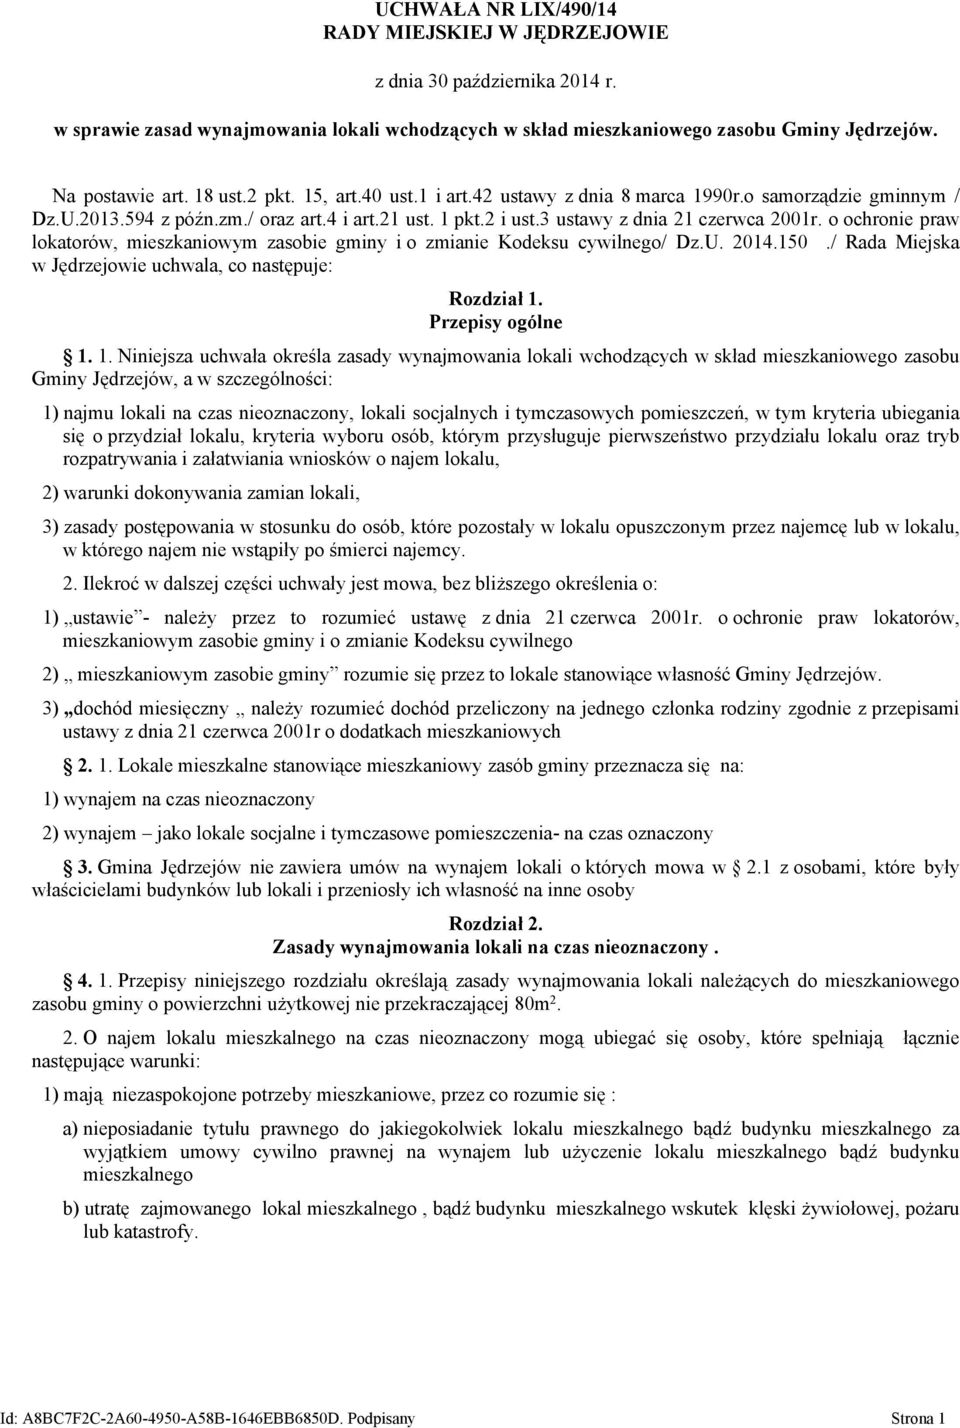 o ochronie praw lokatorów, mieszkaniowym zasobie gminy i o zmianie Kodeksu cywilnego/ Dz.U. 2014.150./ Rada Miejska w Jędrzejowie uchwala, co następuje: Rozdział 1.